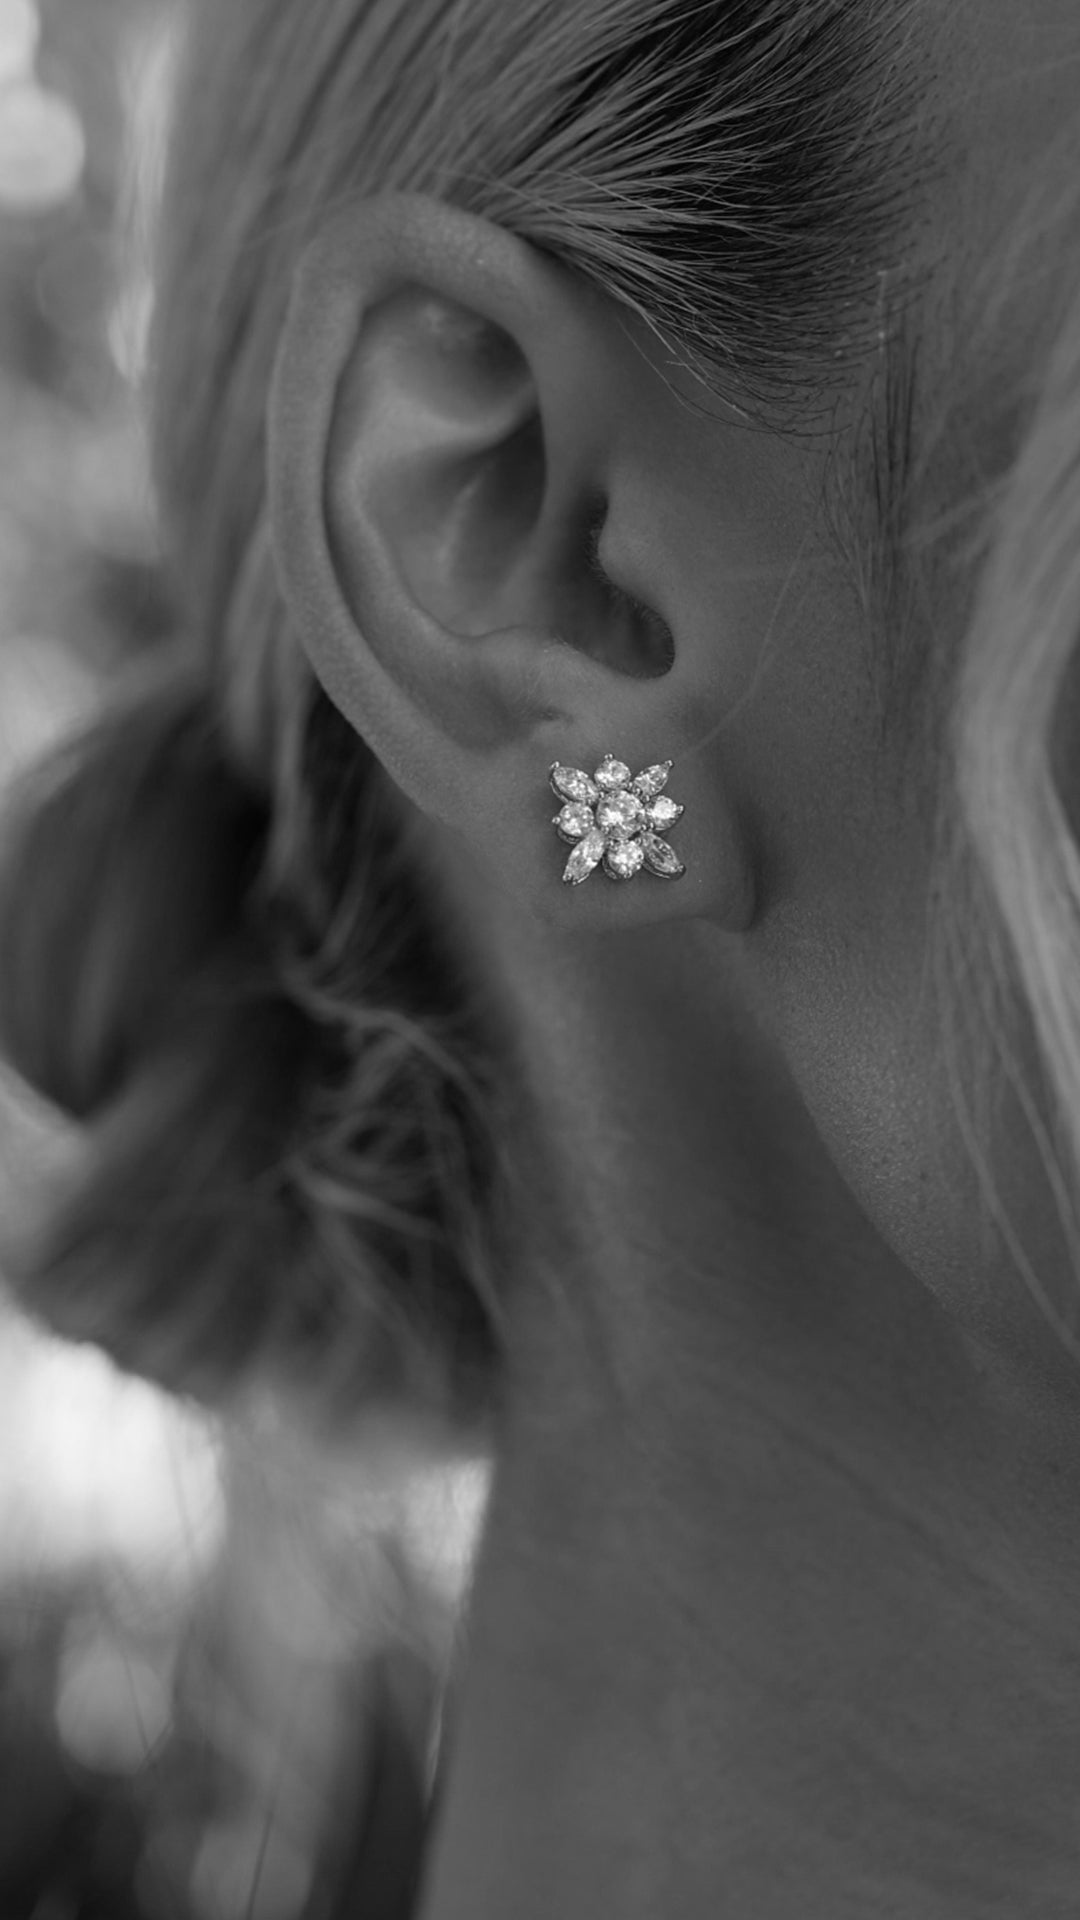 Snowflower Stud Earrings